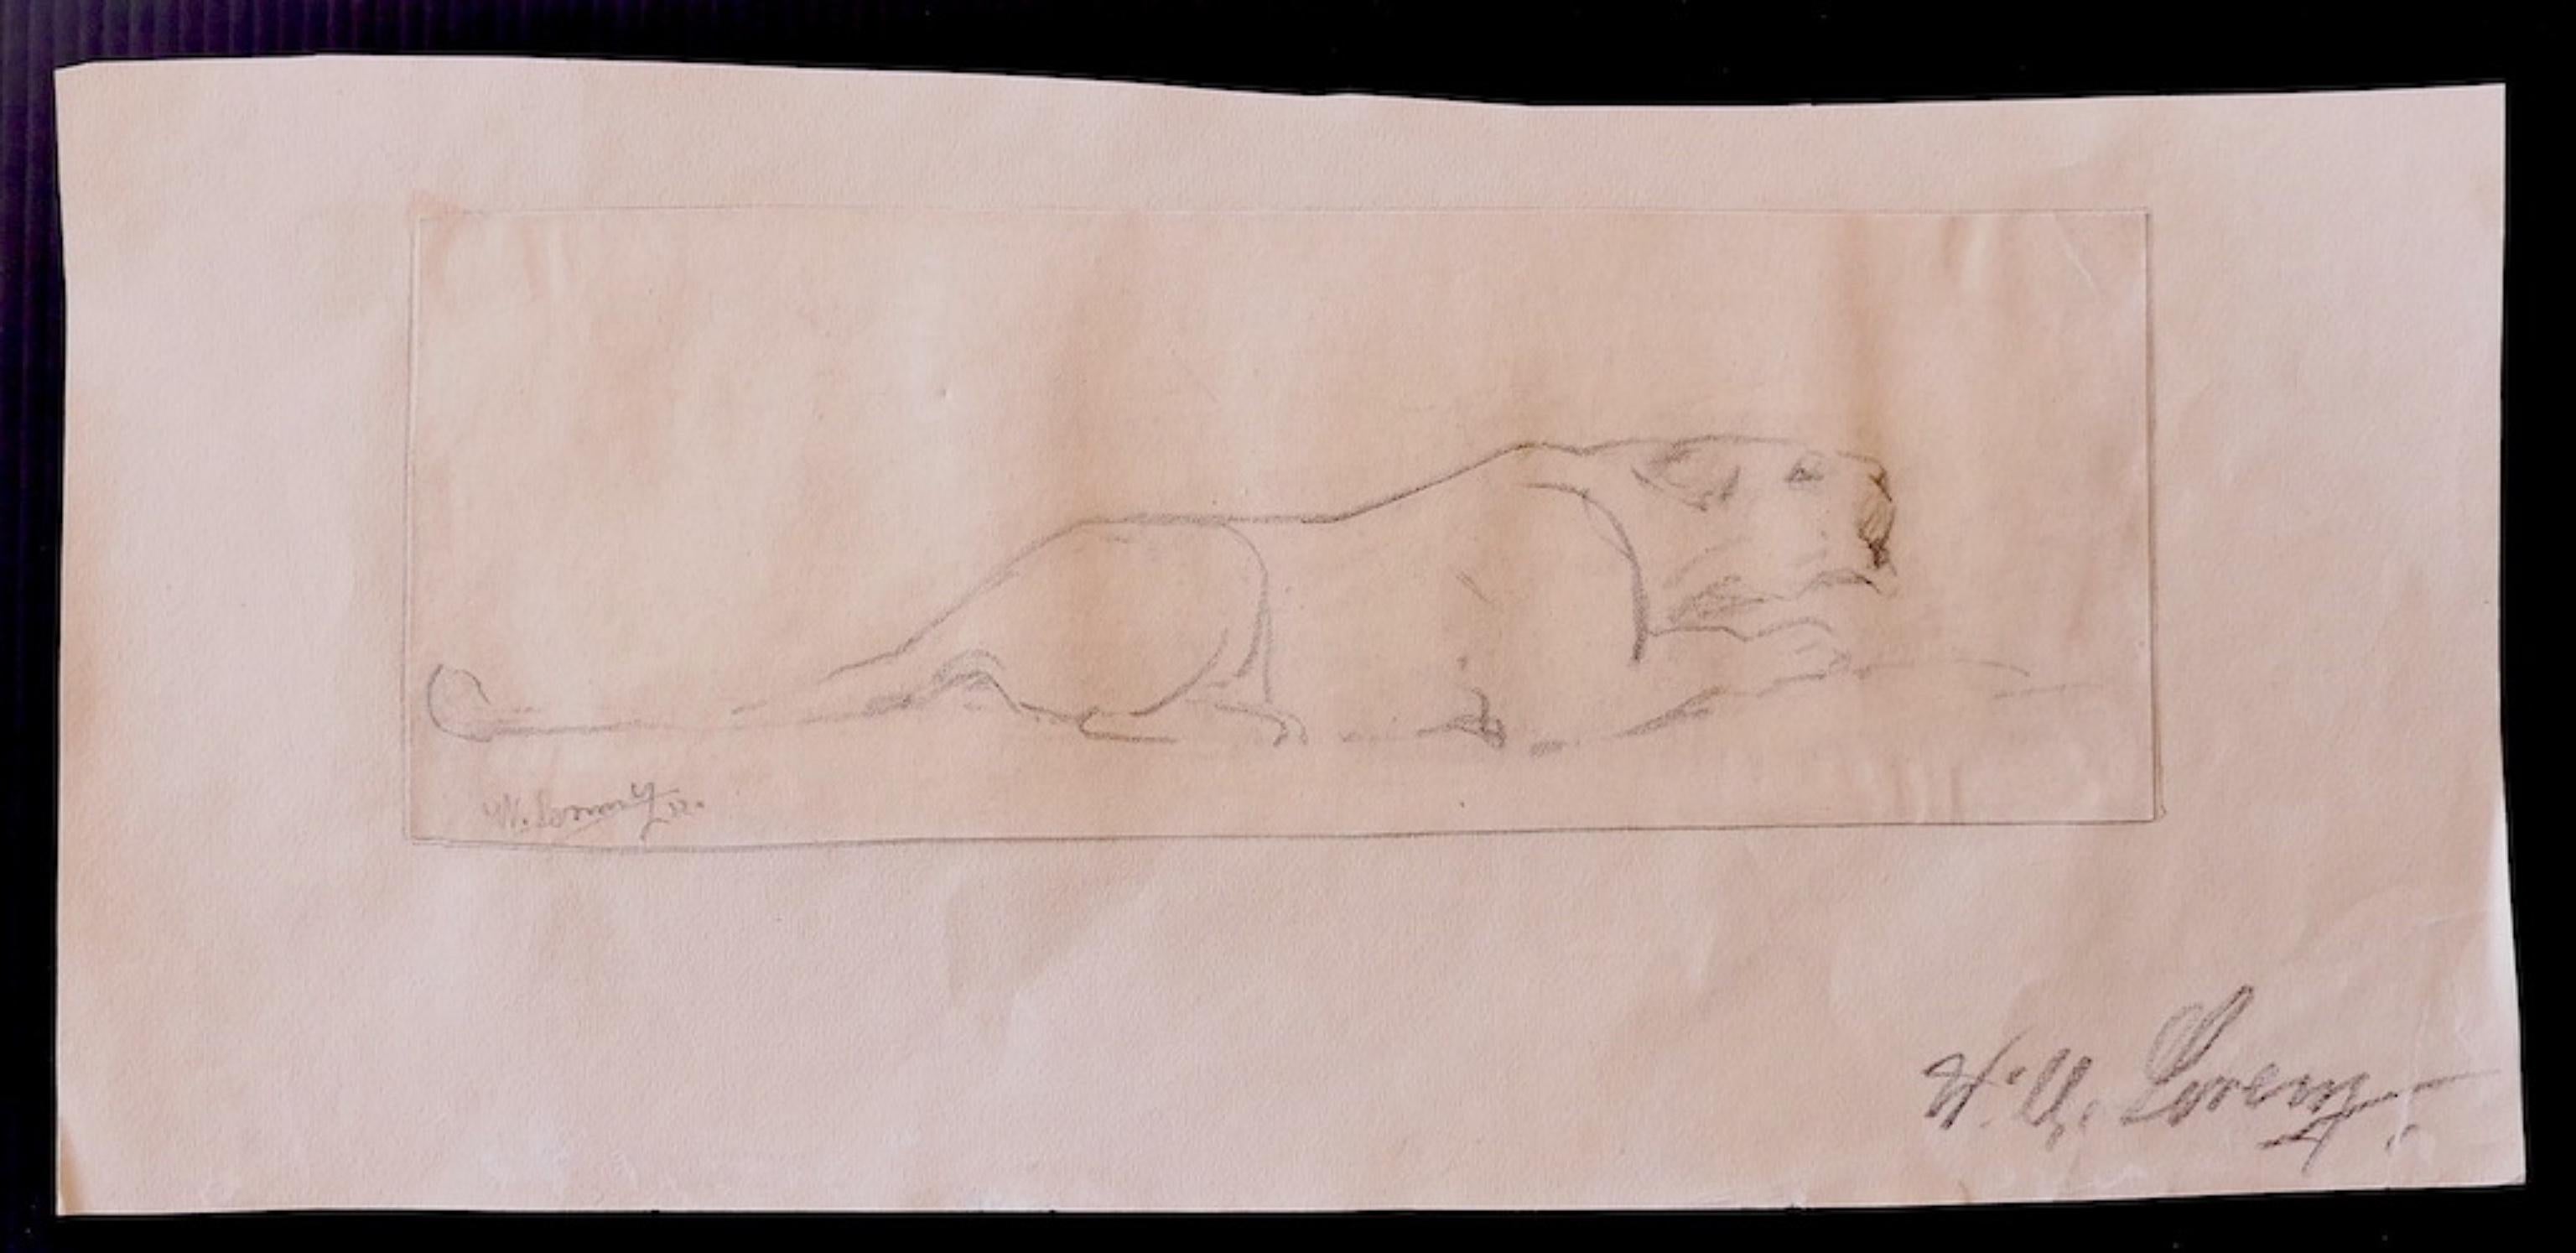 Studie eines Löwen ist eine schöne Originalzeichnung auf elfenbeinfarbenem Papier aus dem Jahr 1932 des deutschen Künstlers Wilhelm Lorenz, auch bekannt als Willi Lorenz. 

Handsigniert unten rechts auf der Zeichnung.

Guter Zustand.

Wilhelm Lorenz